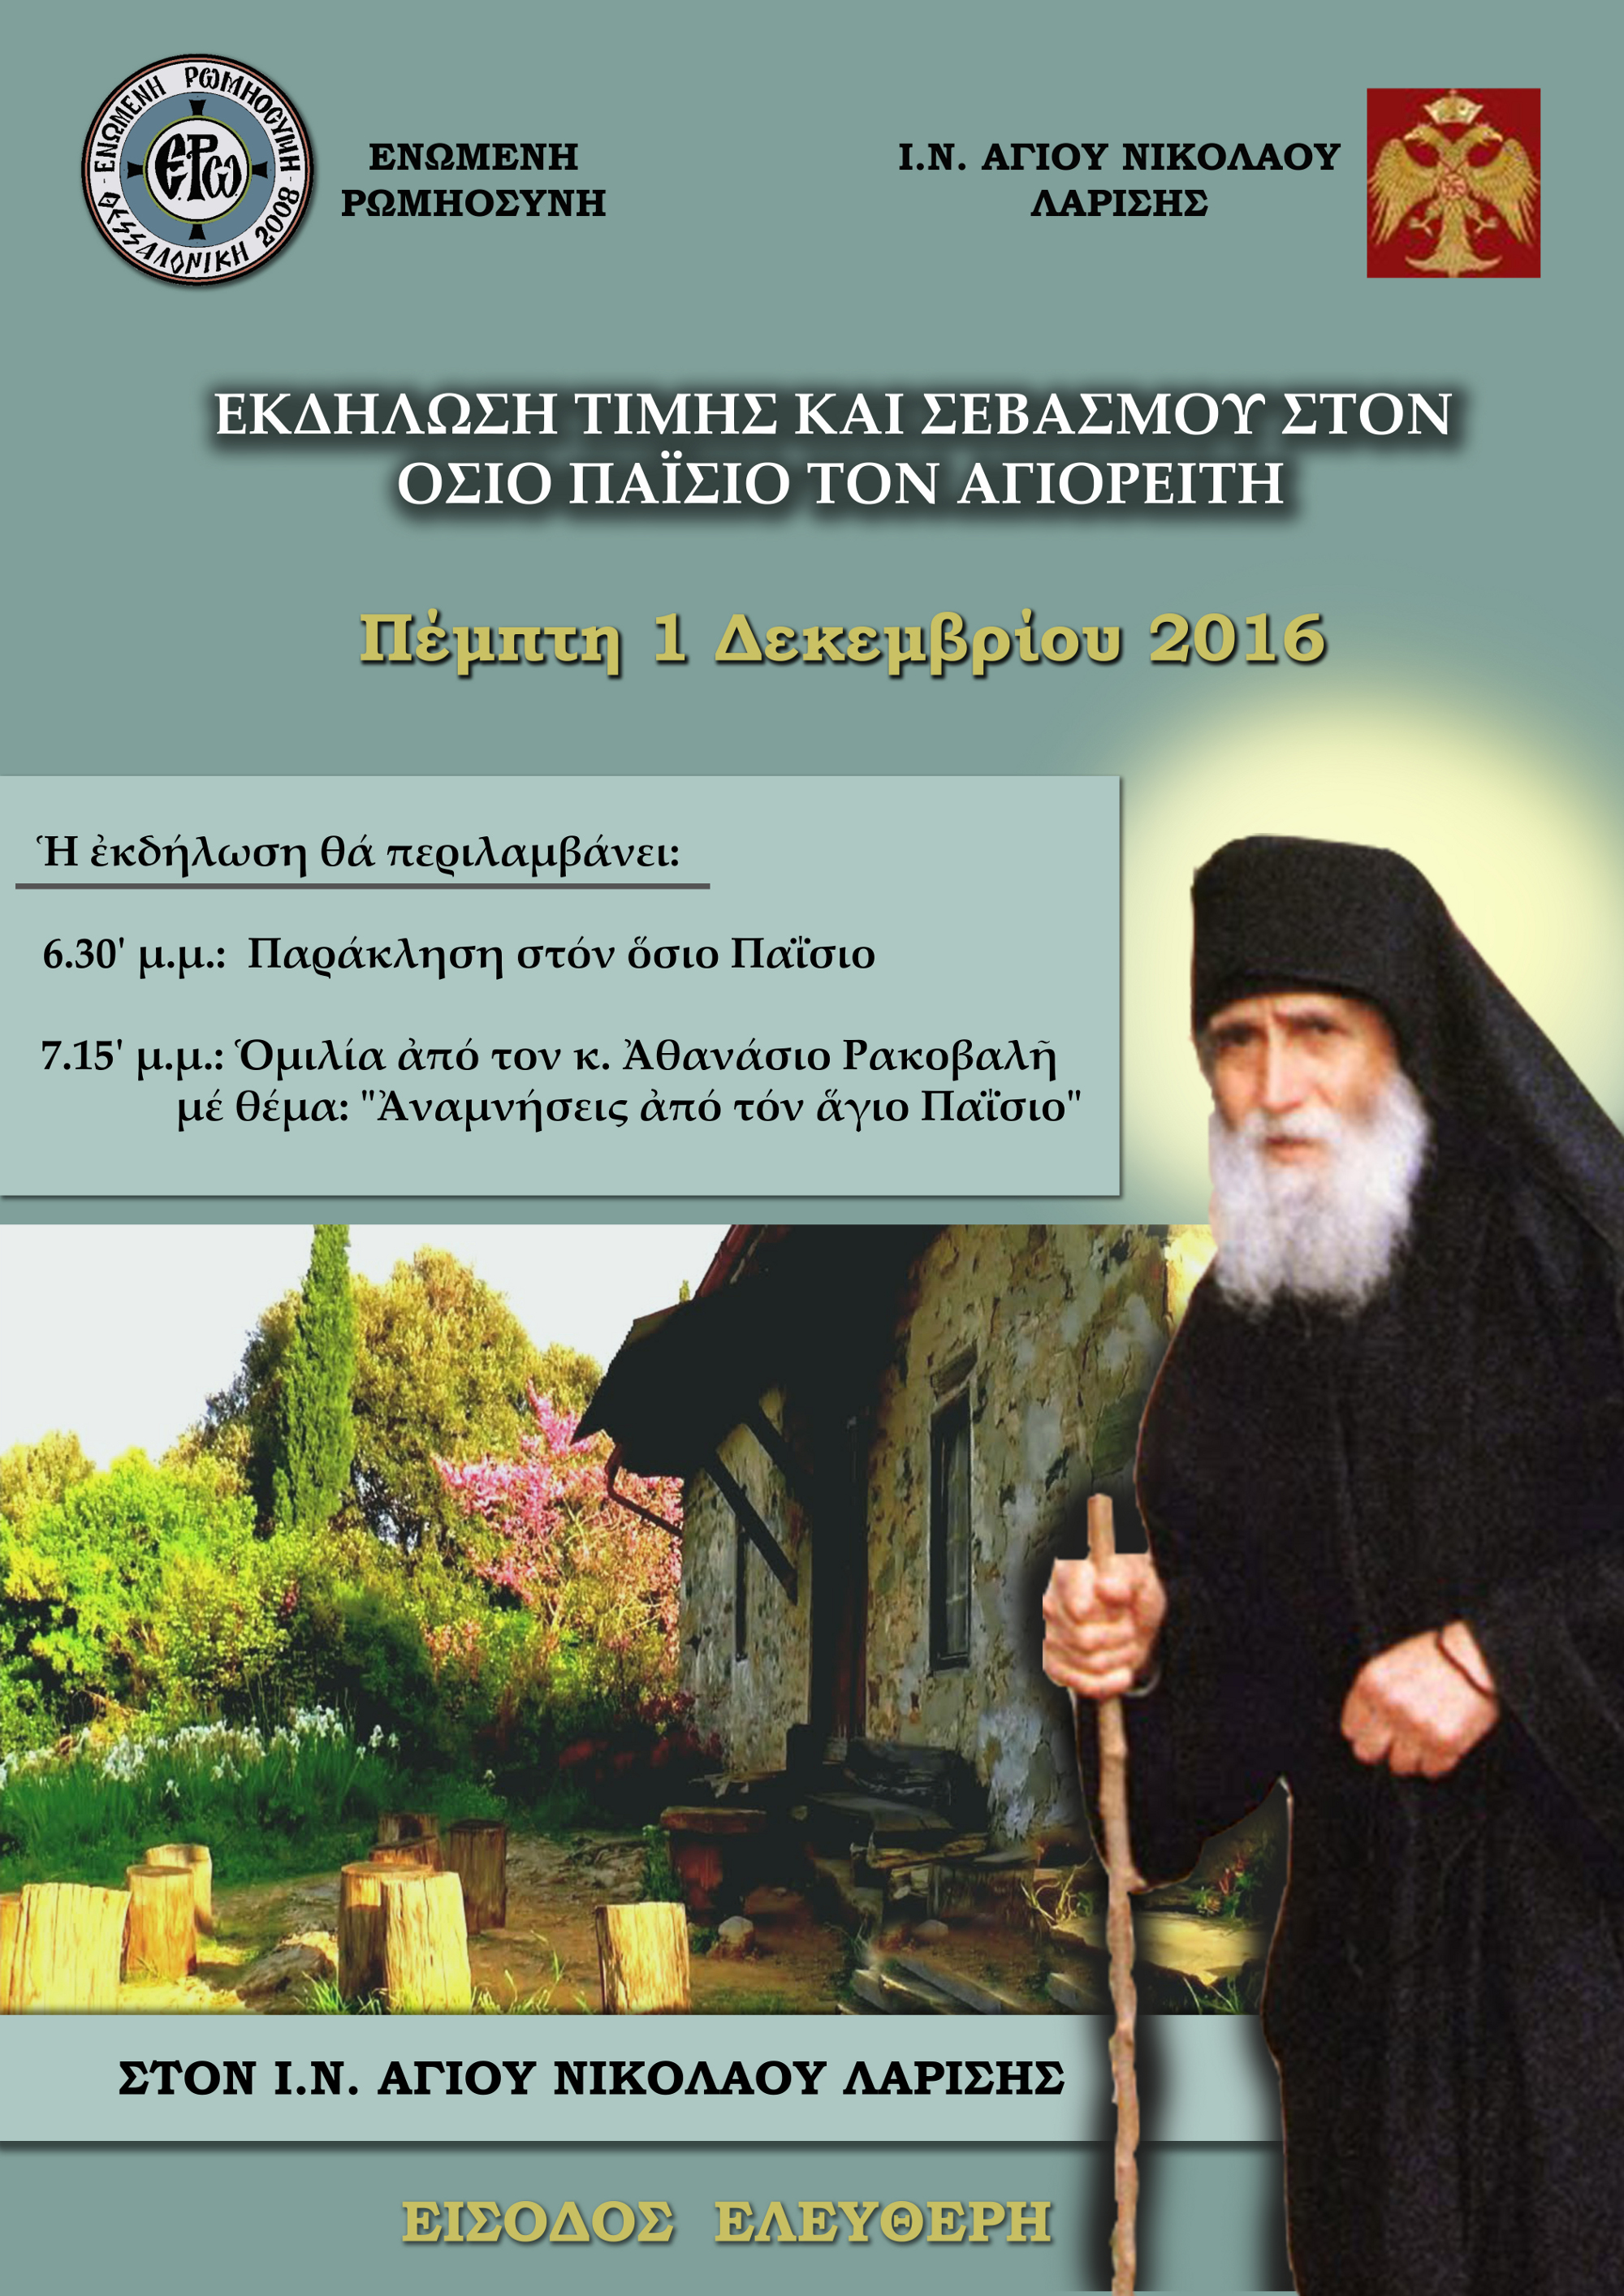 Εκδήλωση σε Θέμα «Αναμνήσεις απο τον Άγιο Παίσιο» στη Λάρισα στις 1-12